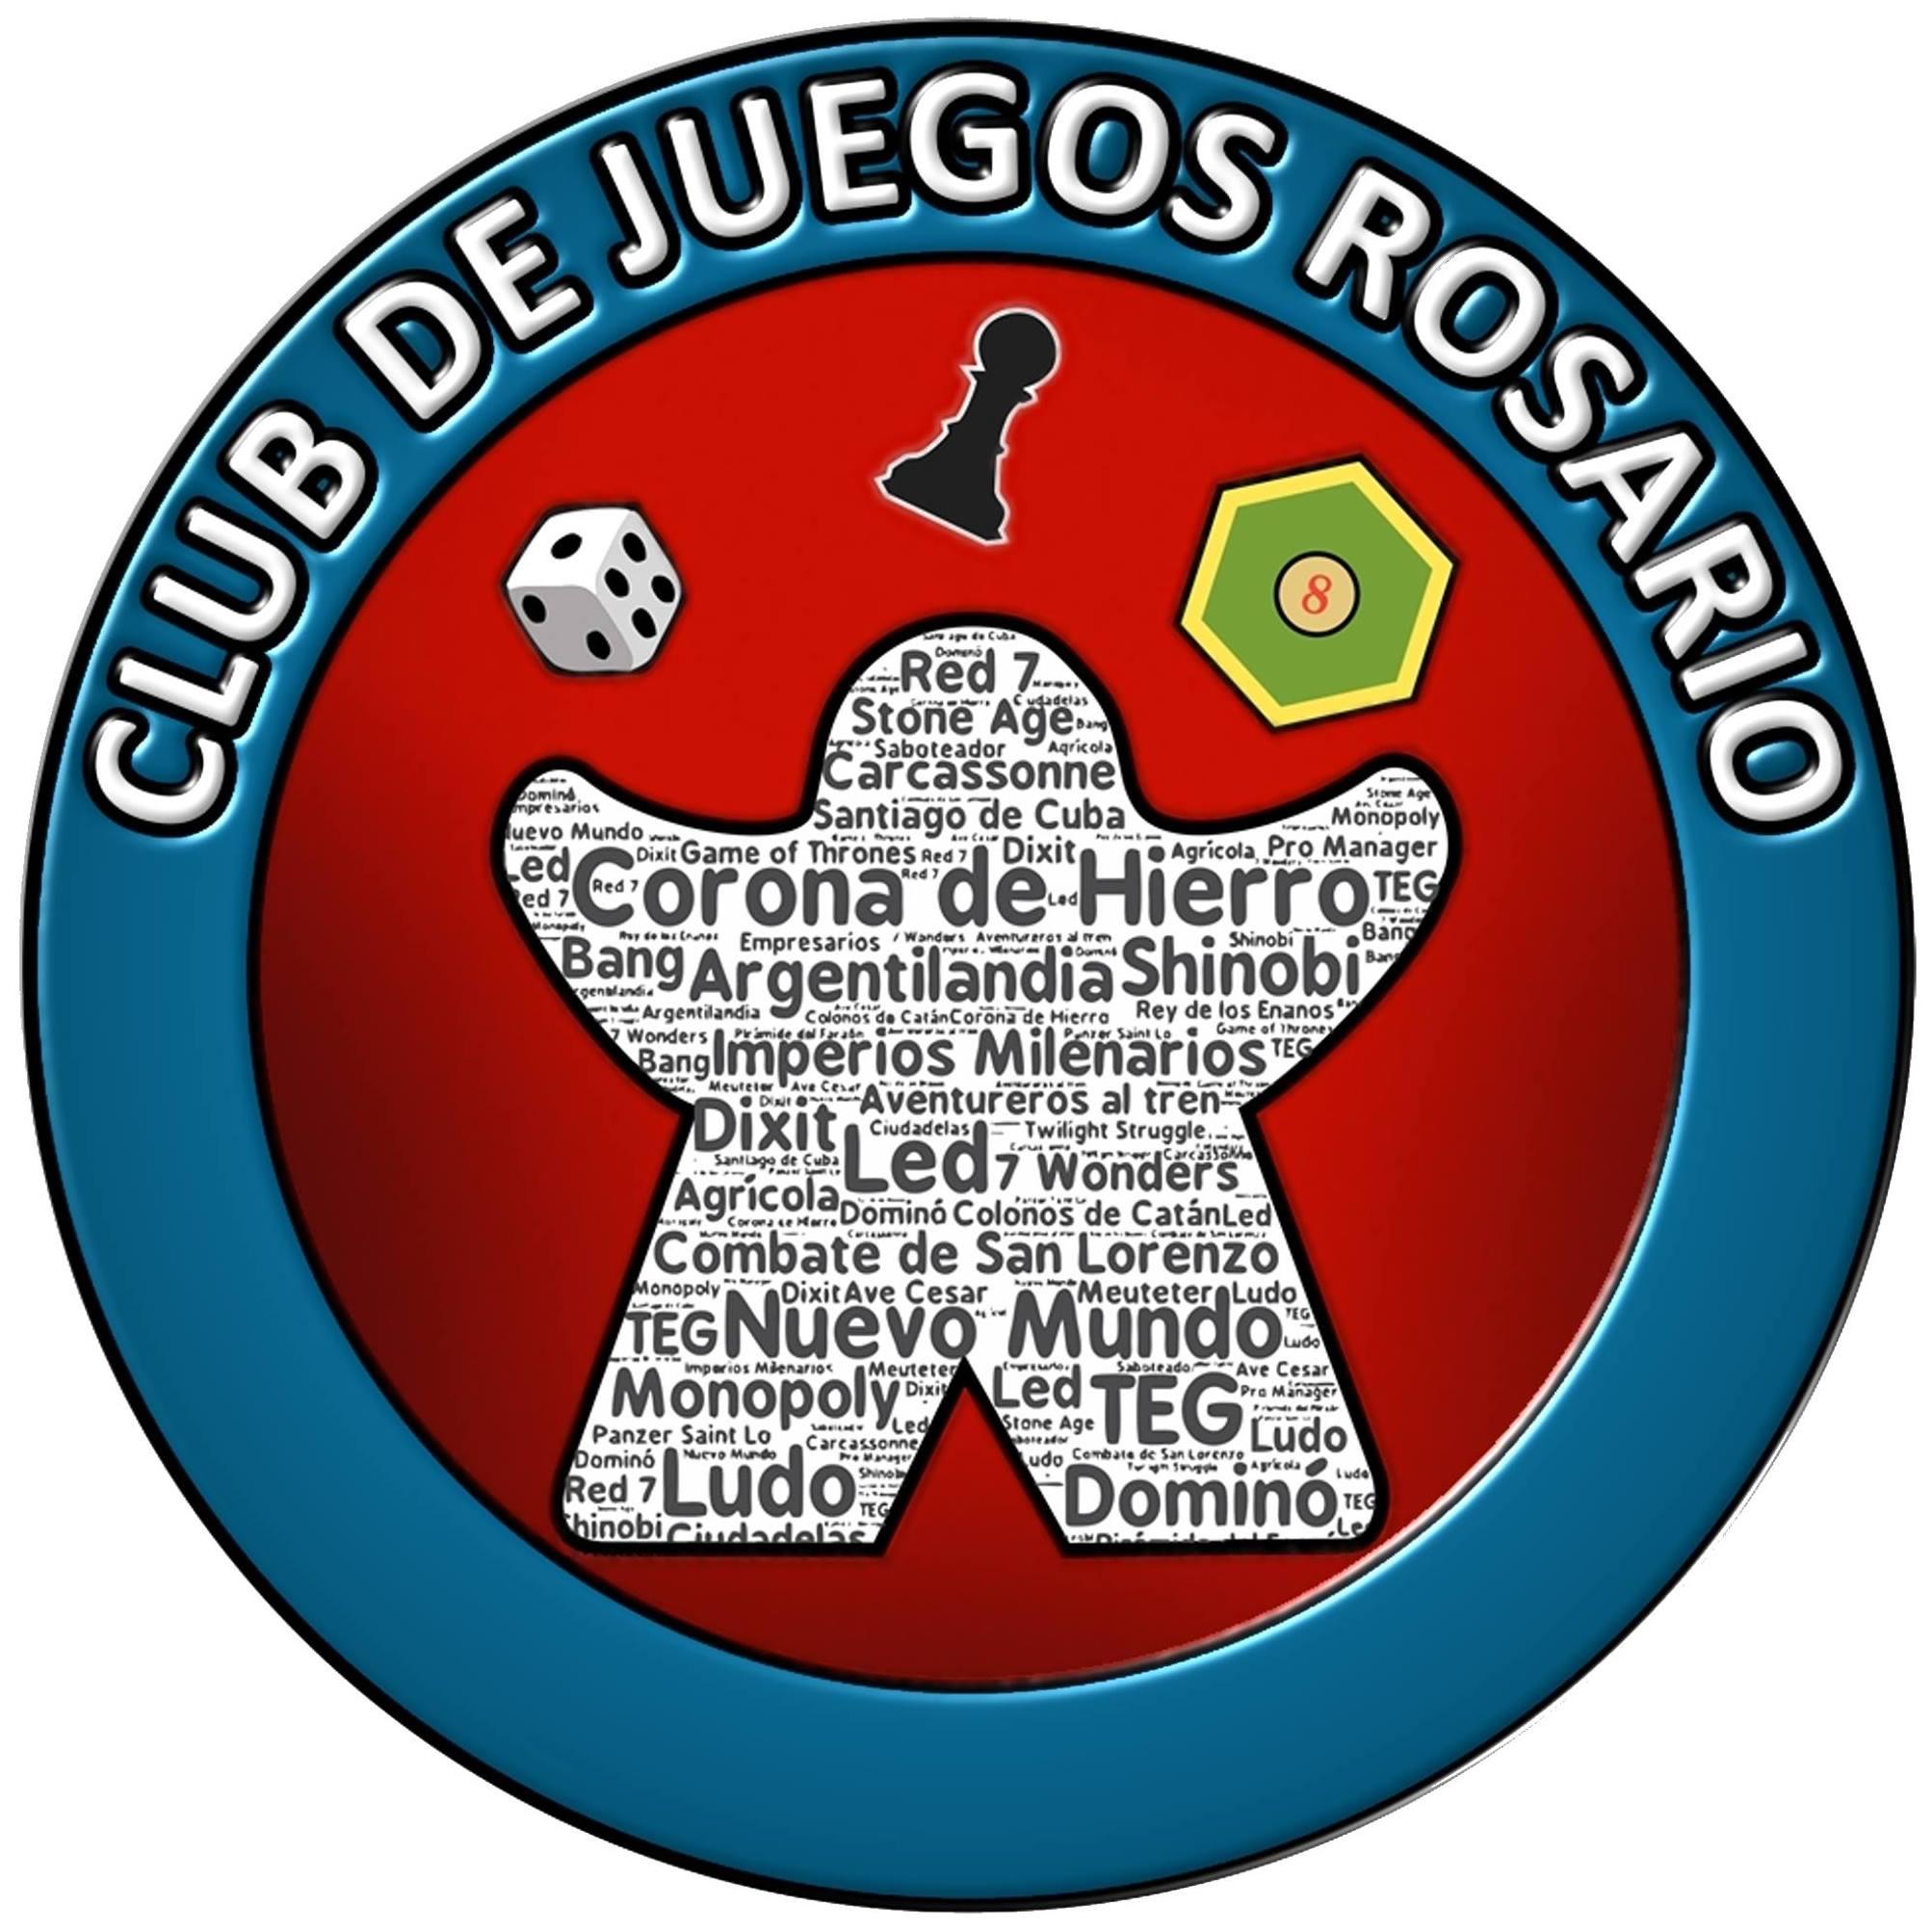 Club de Juegos Rosario